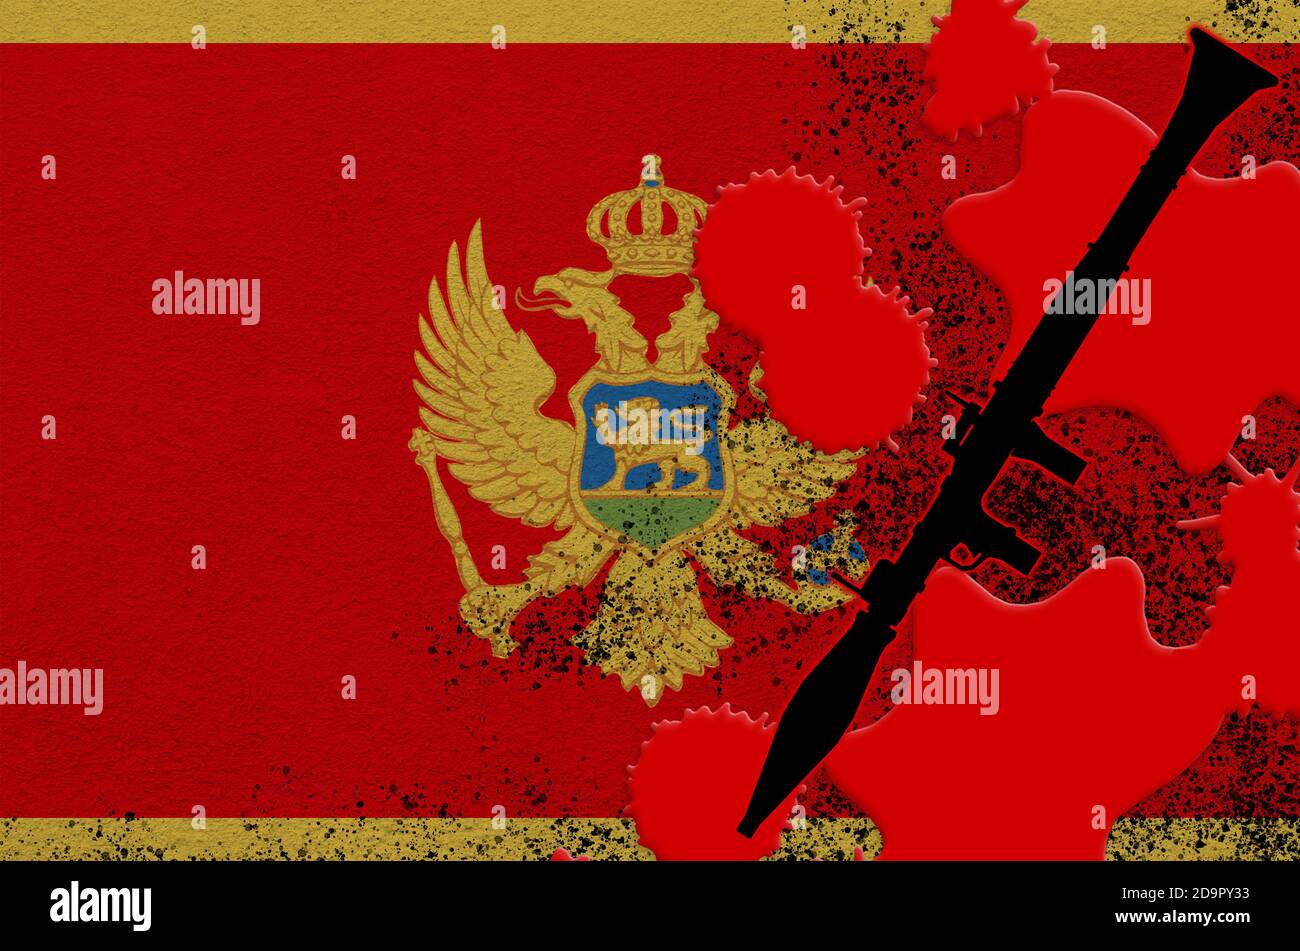 Bandiera Montenegro e lanciagranate nero RPG-7 con propulsione a razzo in sangue rosso. Concetto di attacco terroristico o operazioni militari con esito letale. Foto Stock